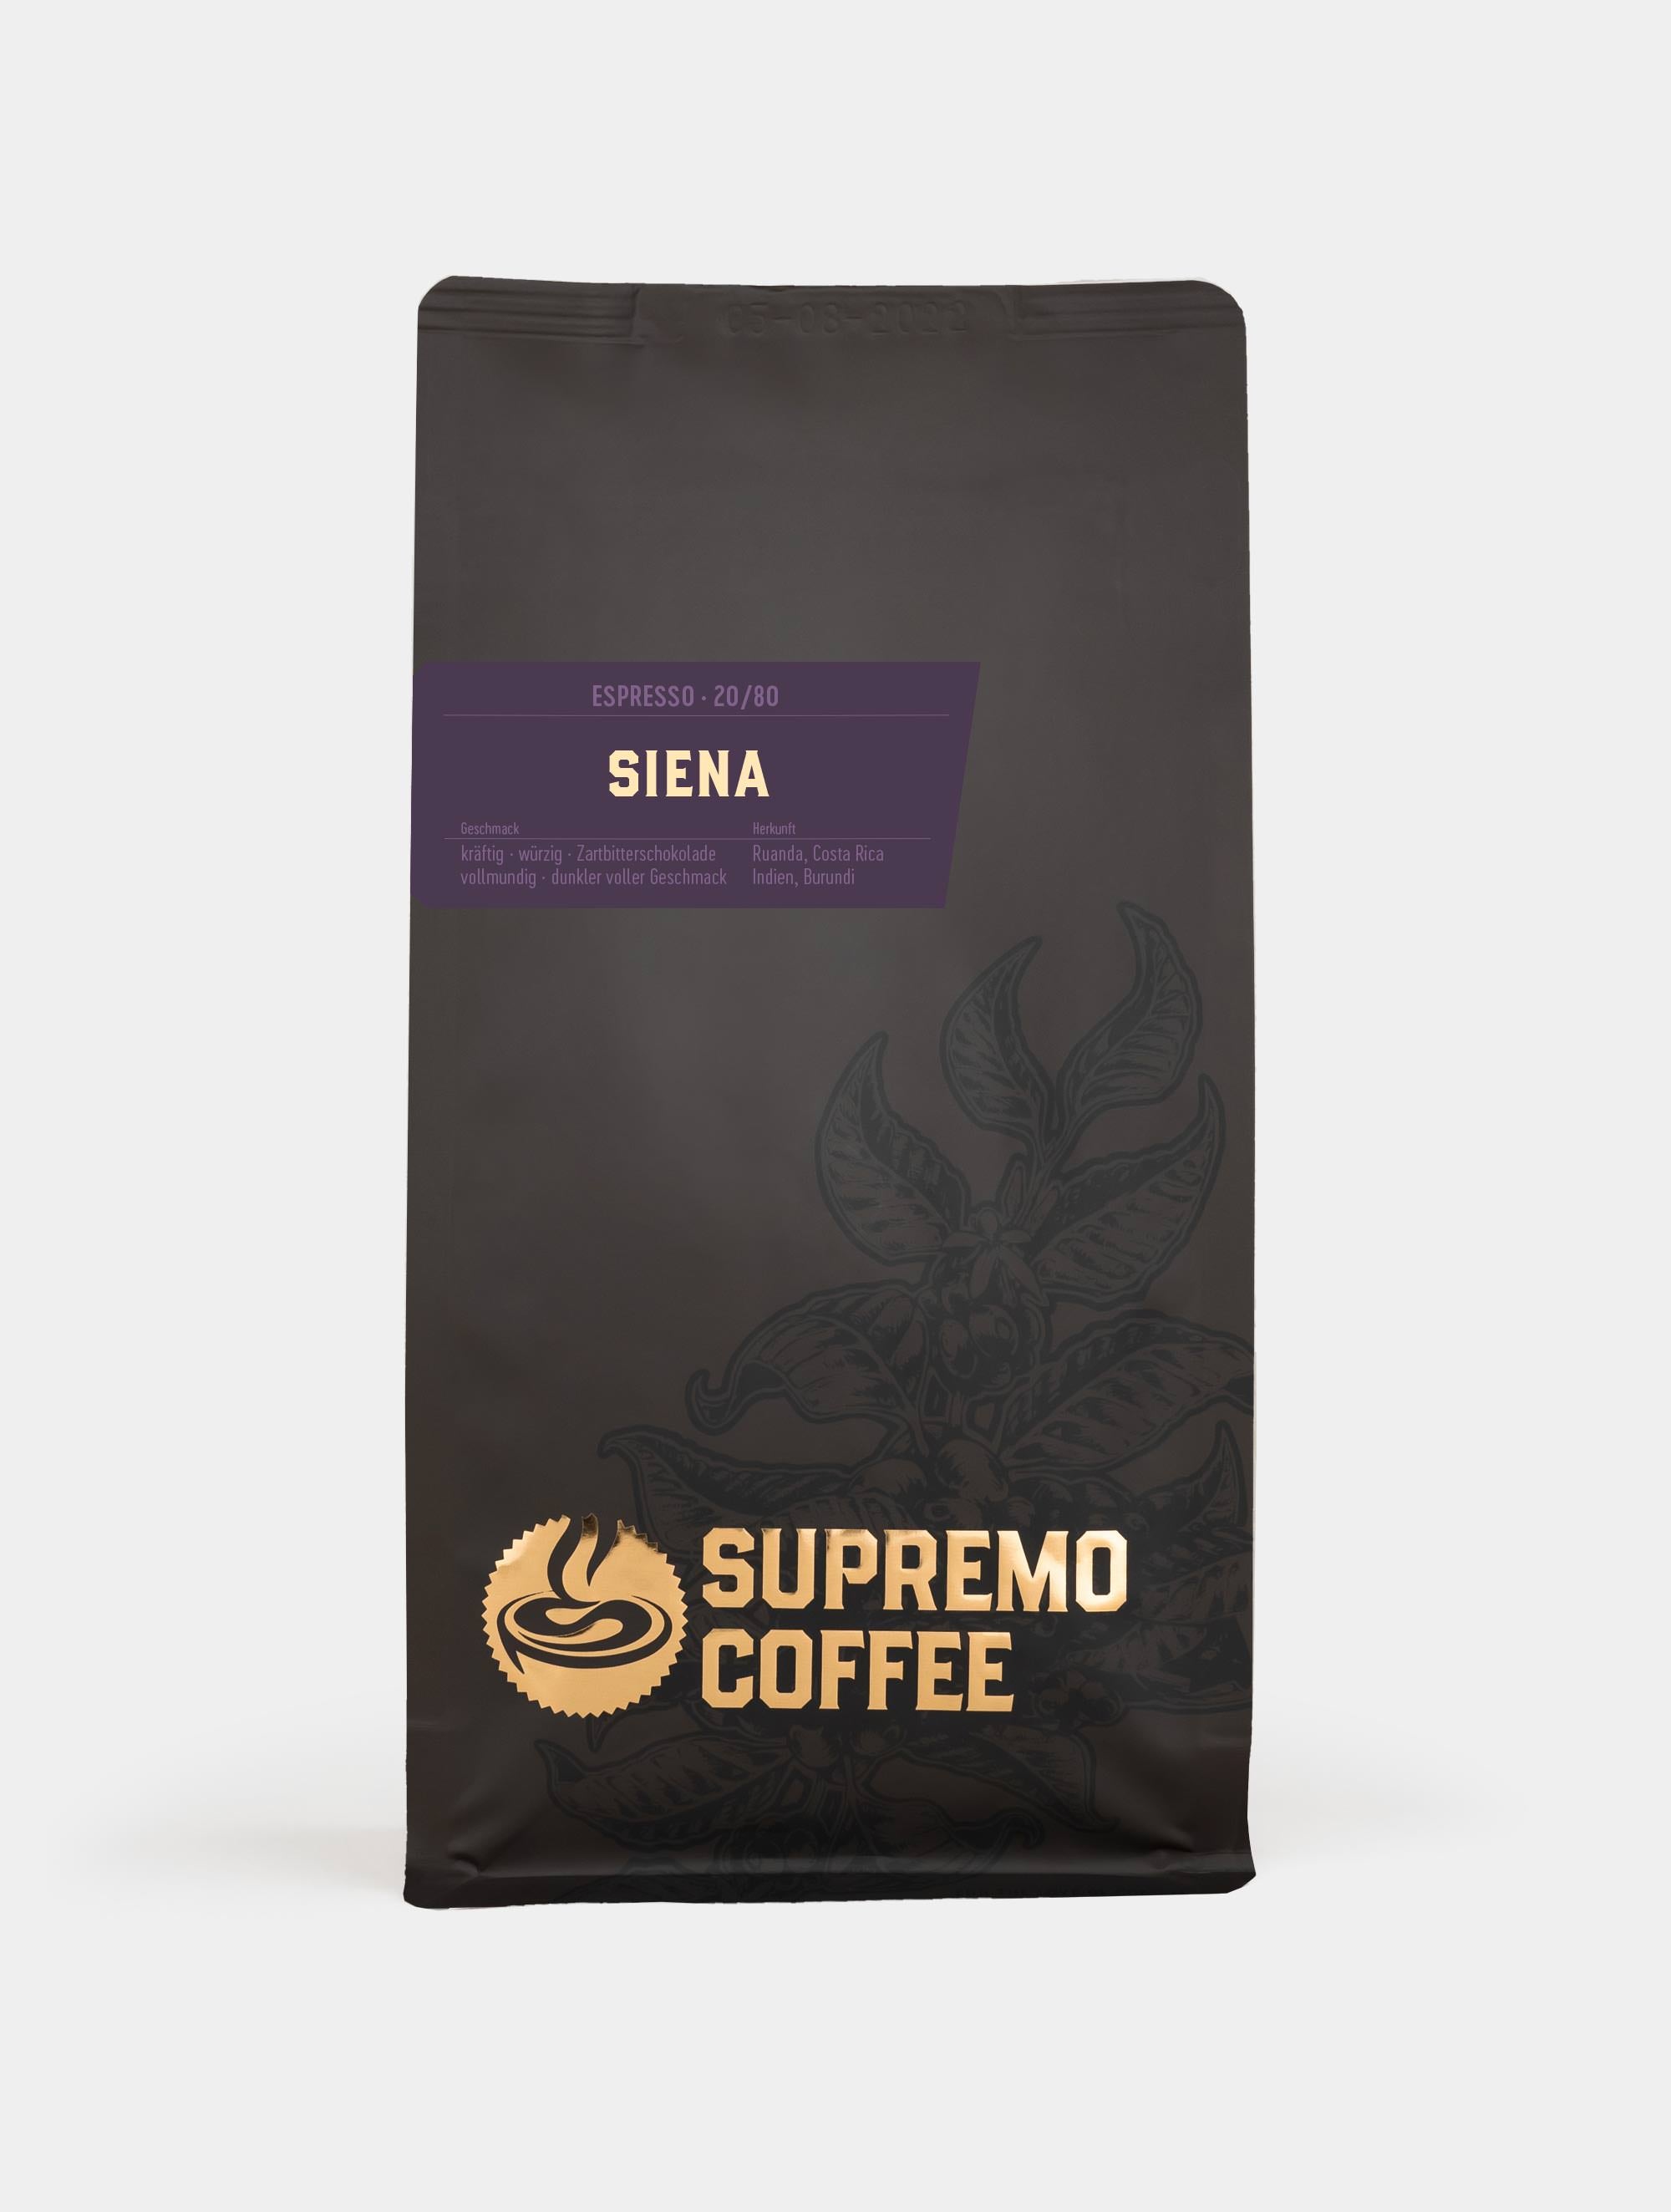 Siena, Espresso 20/80 | SUPREMO Coffee